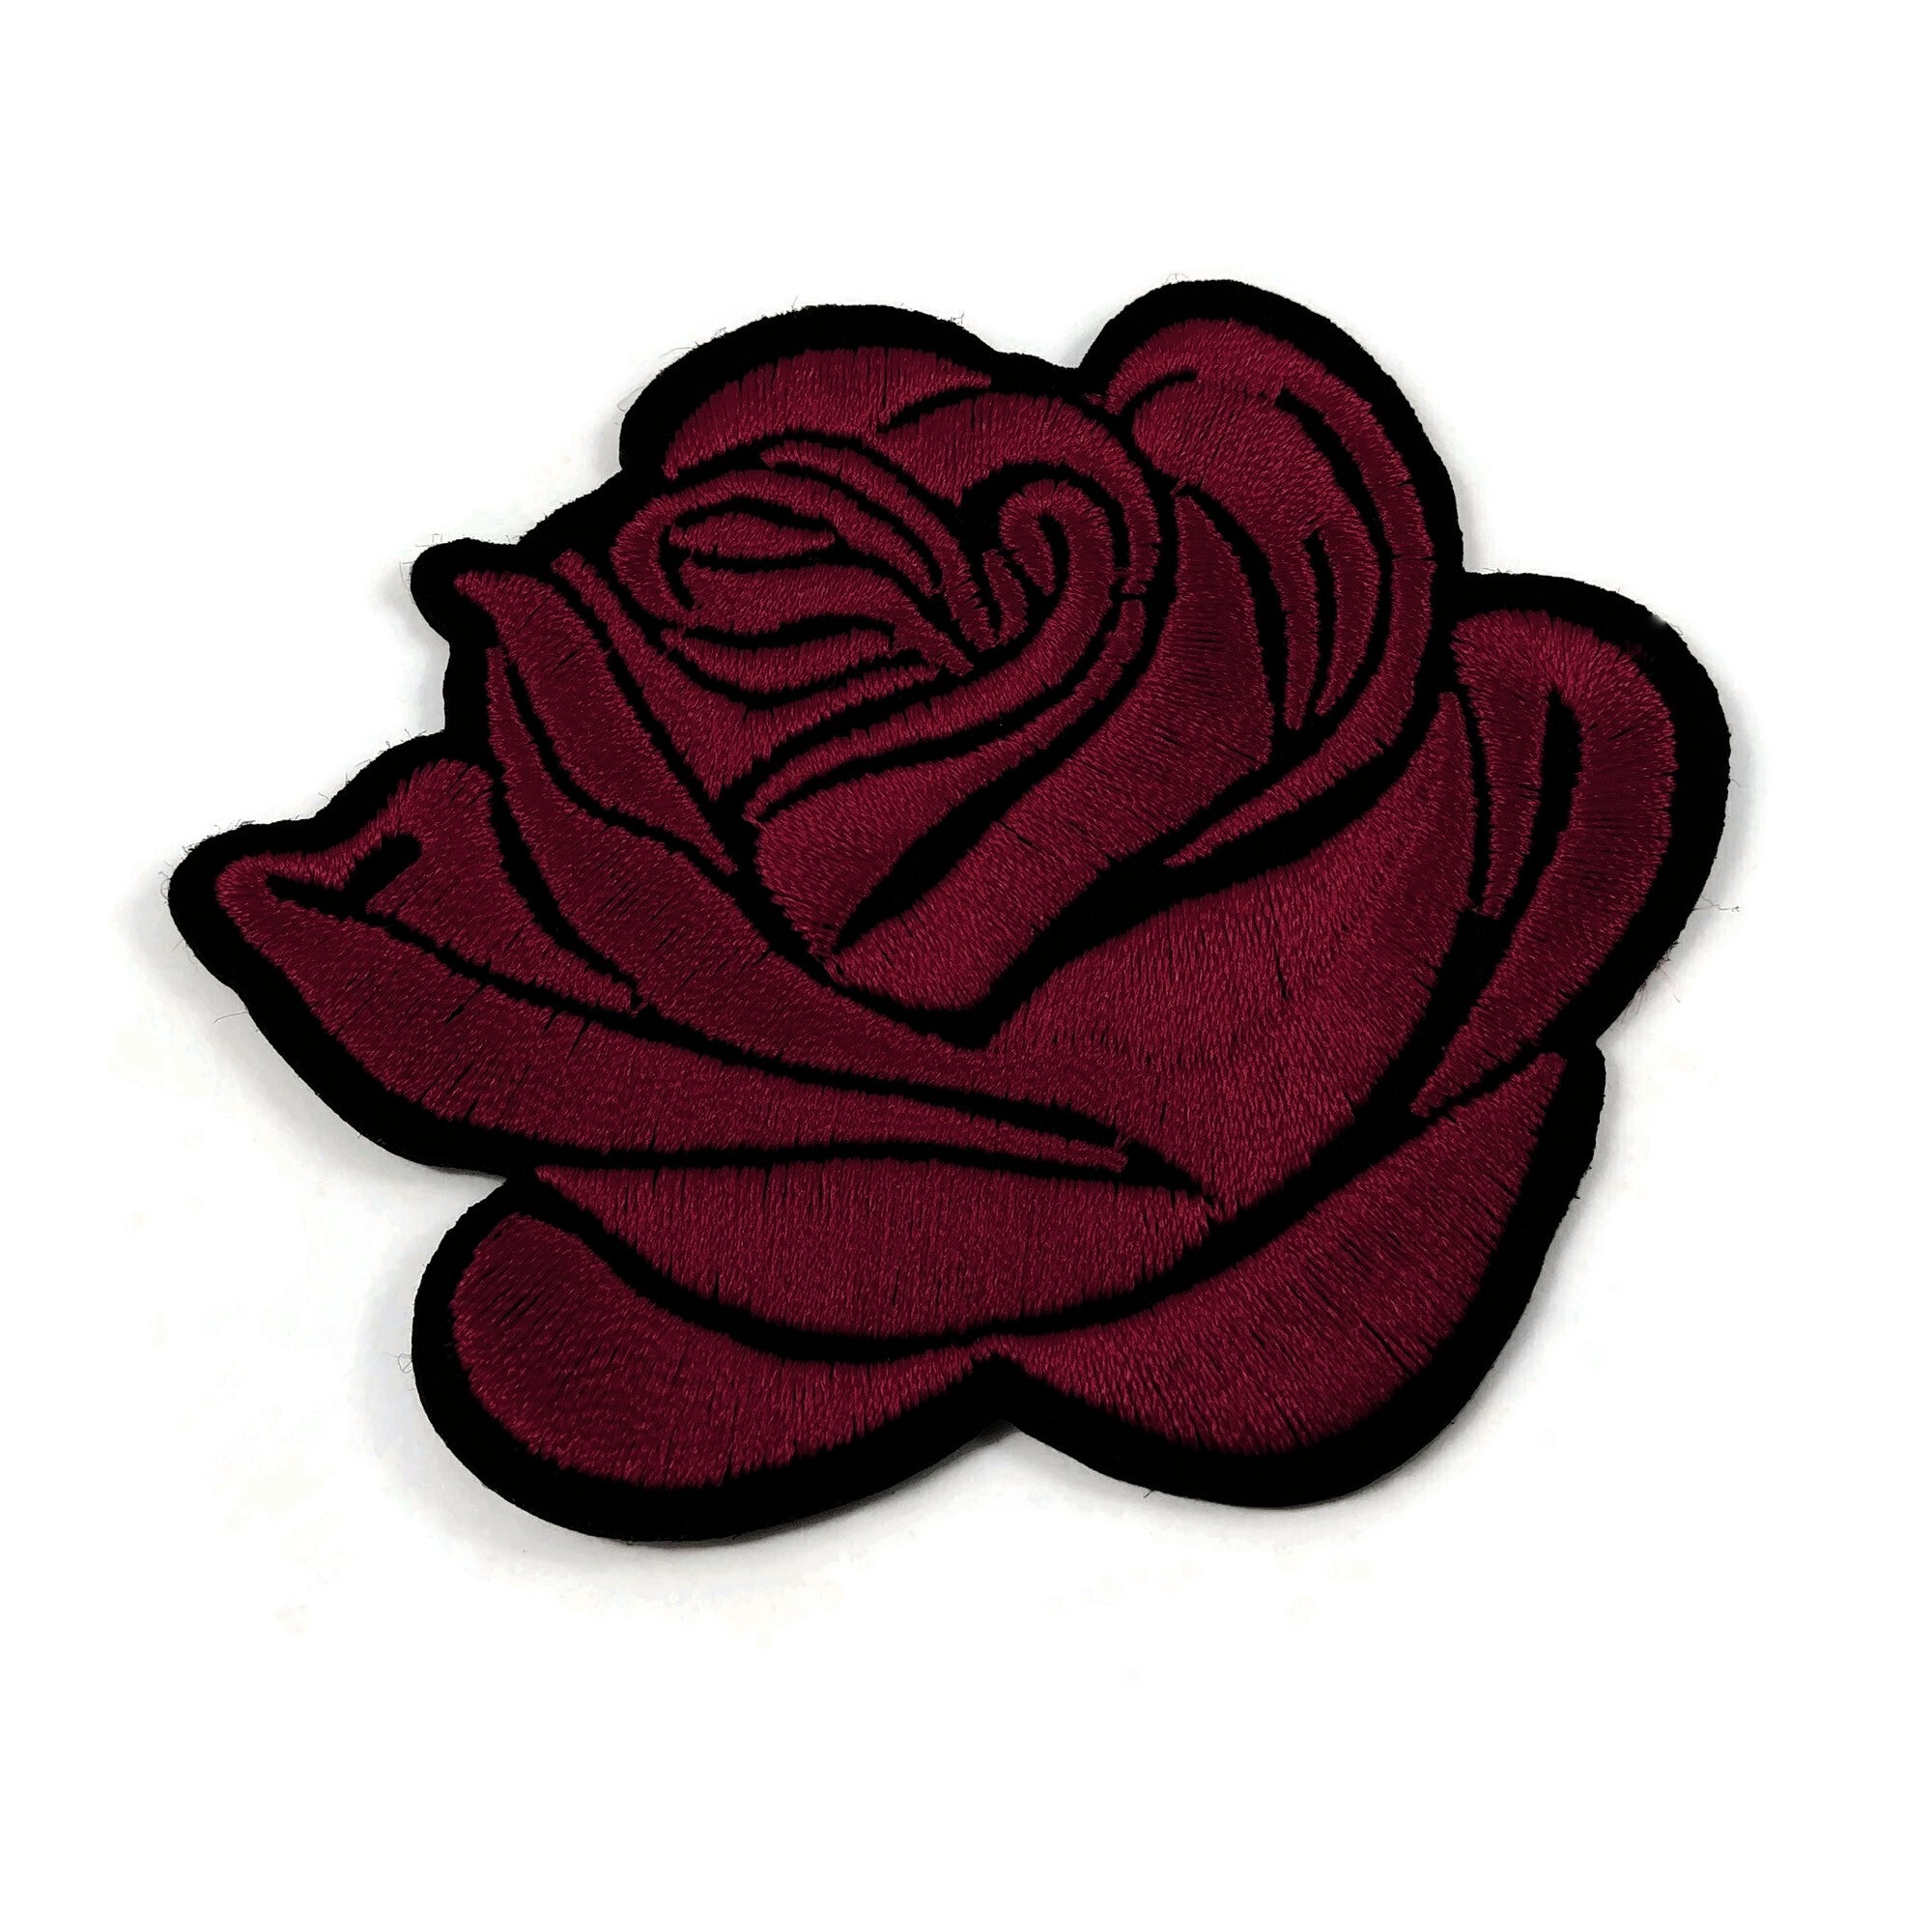 Écussons thermocollant fleur - Choisissez votre couleur de rose